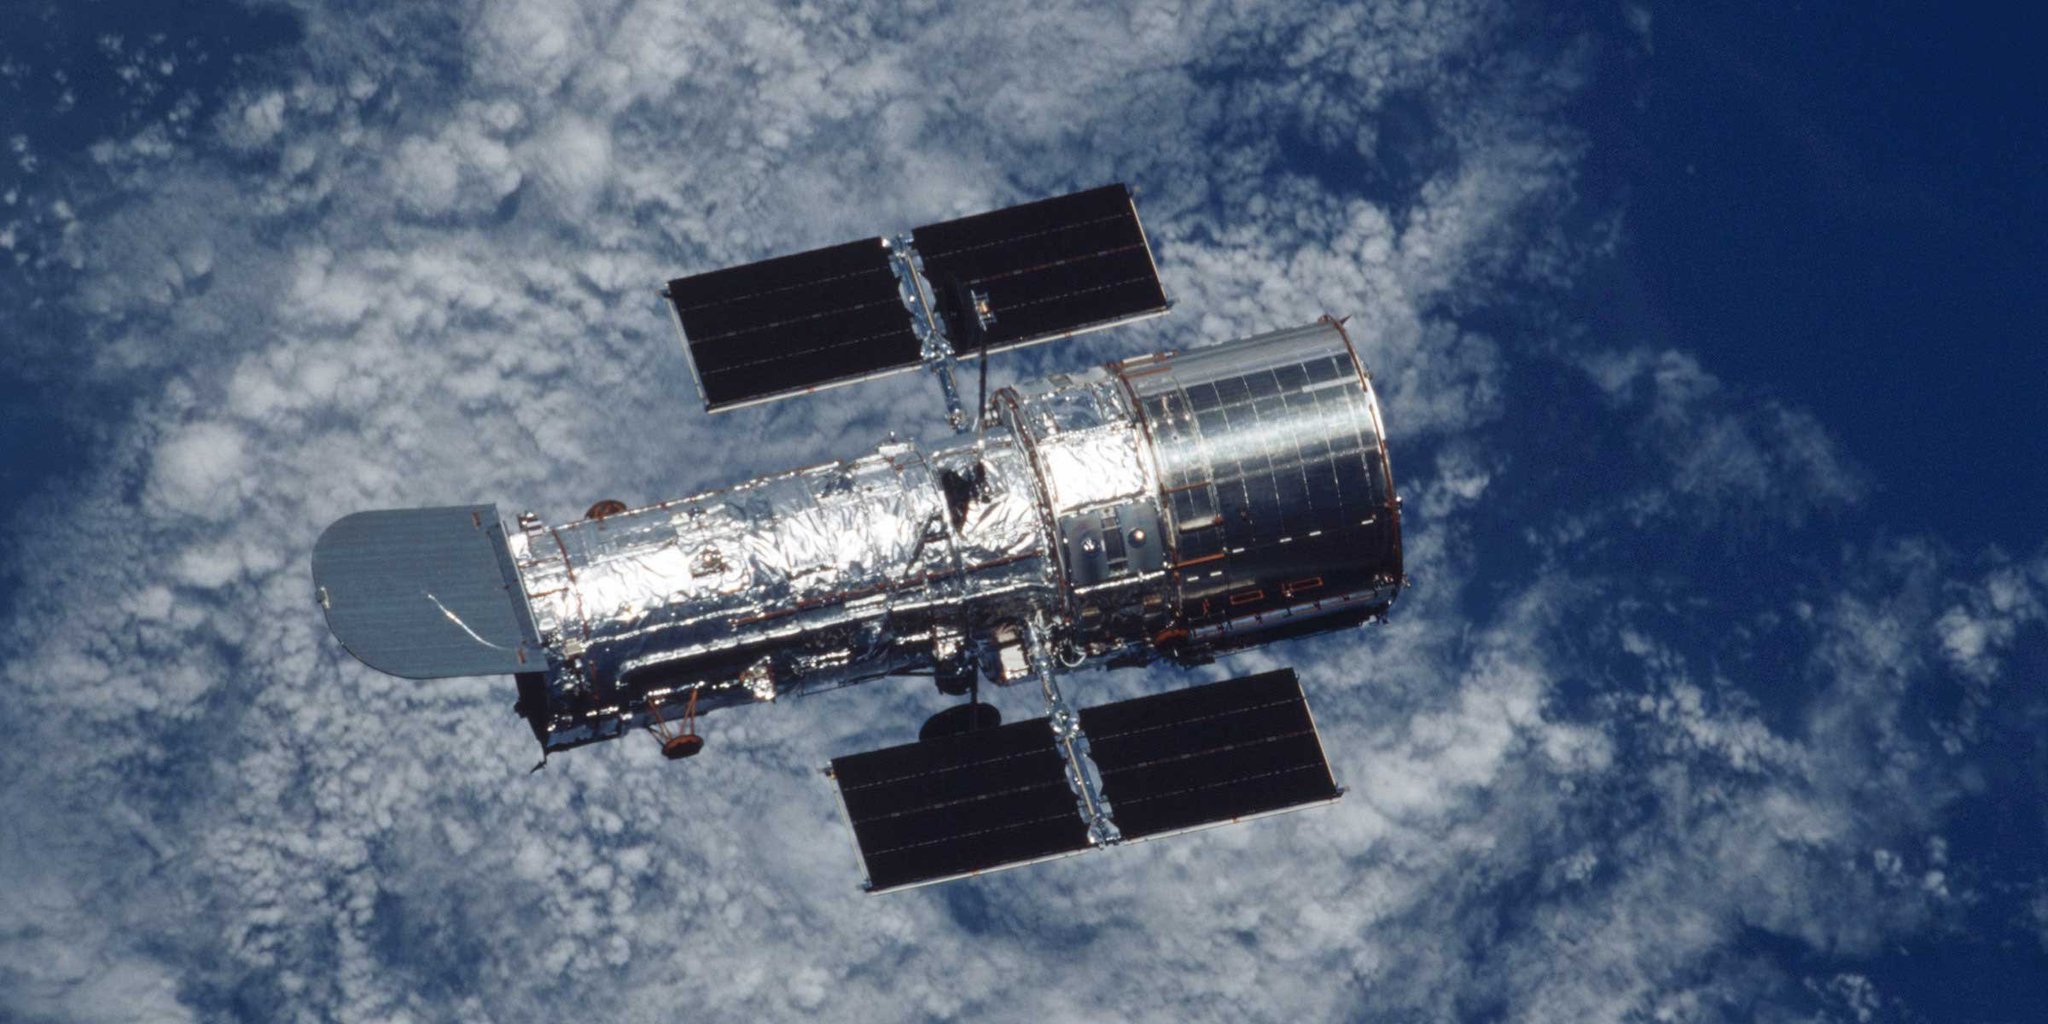 Dernière ligne droite pour le télescope Hubble, la NASA va devoir le passer en mode dégradé